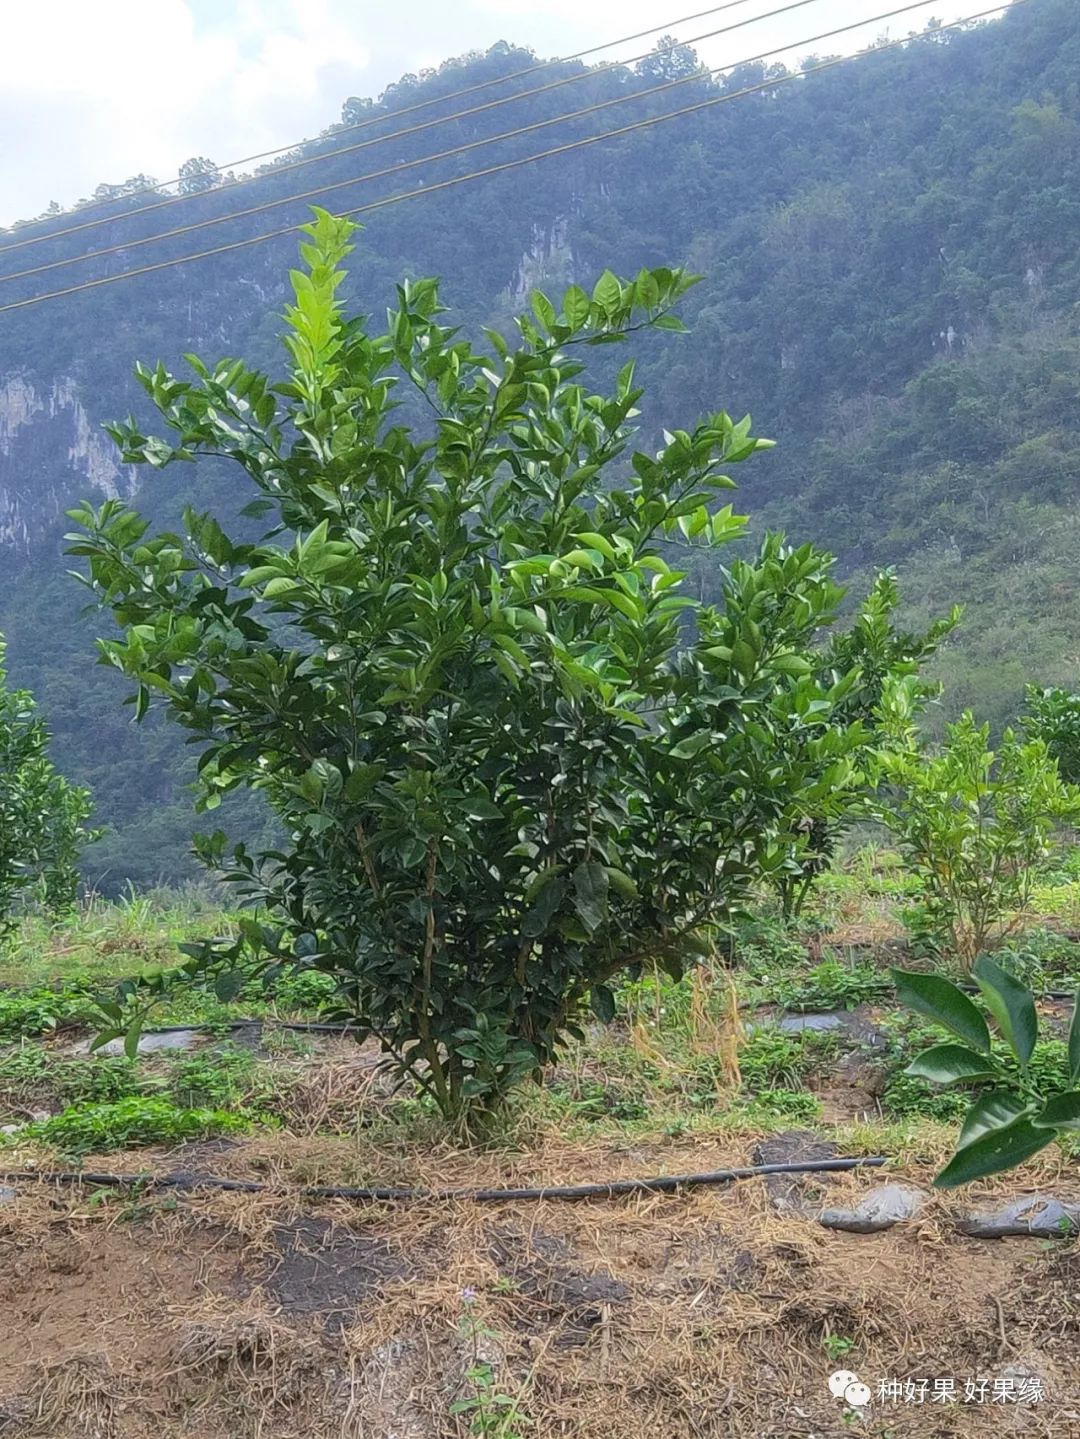 柑橘省力化低投入高品质栽培在脐橙幼树上的运用实例